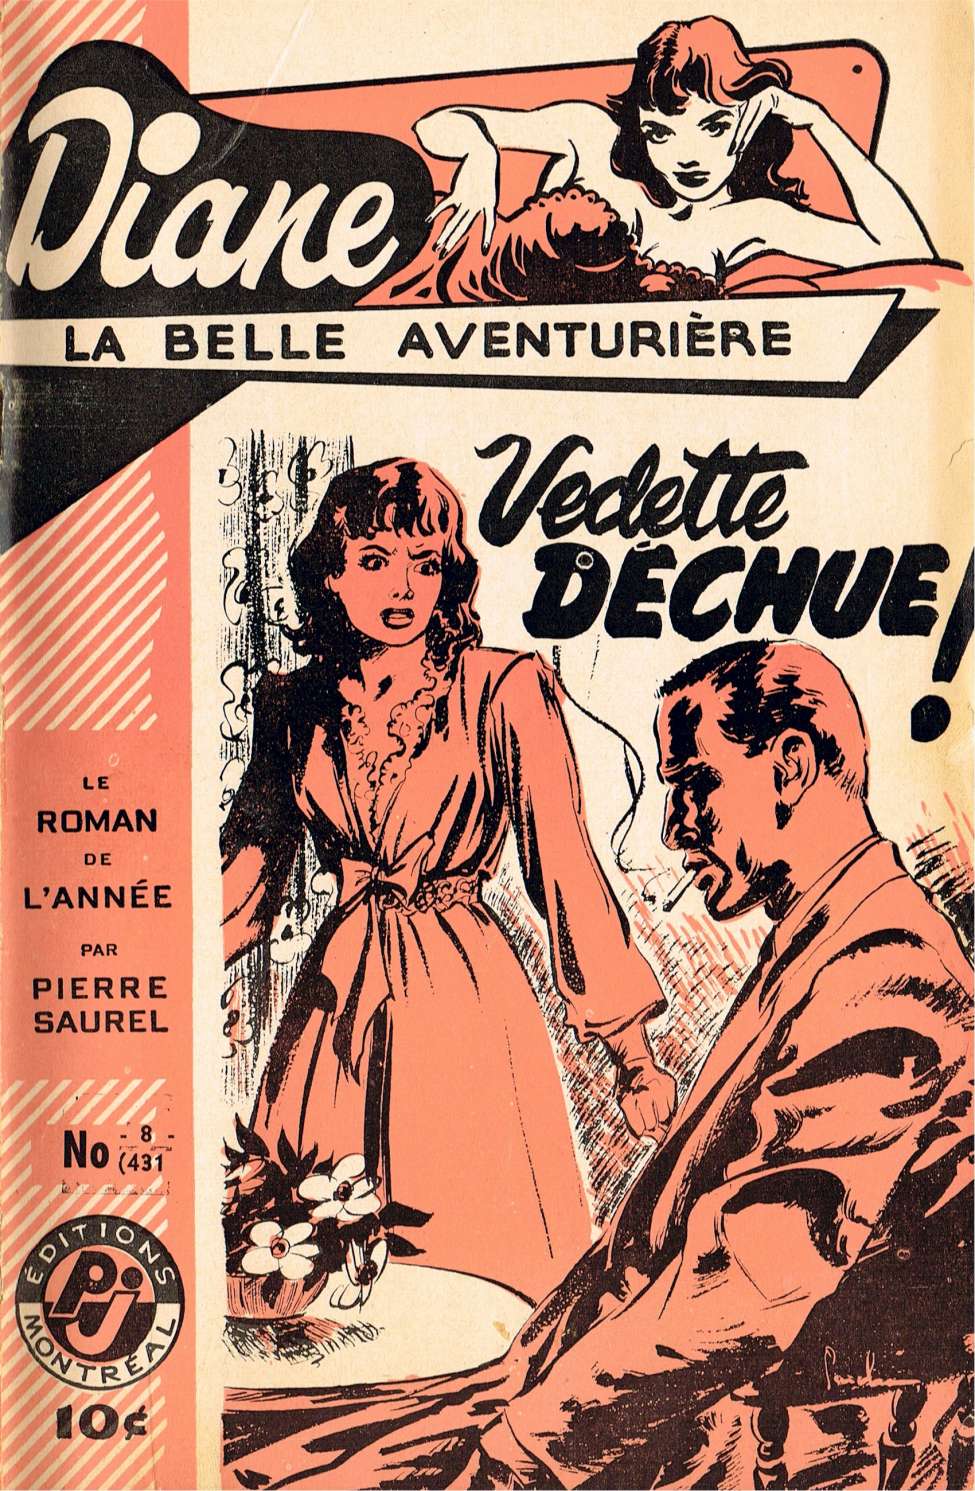 Book Cover For Diane, La Belle Aventuriere 8 - Vedette déchue